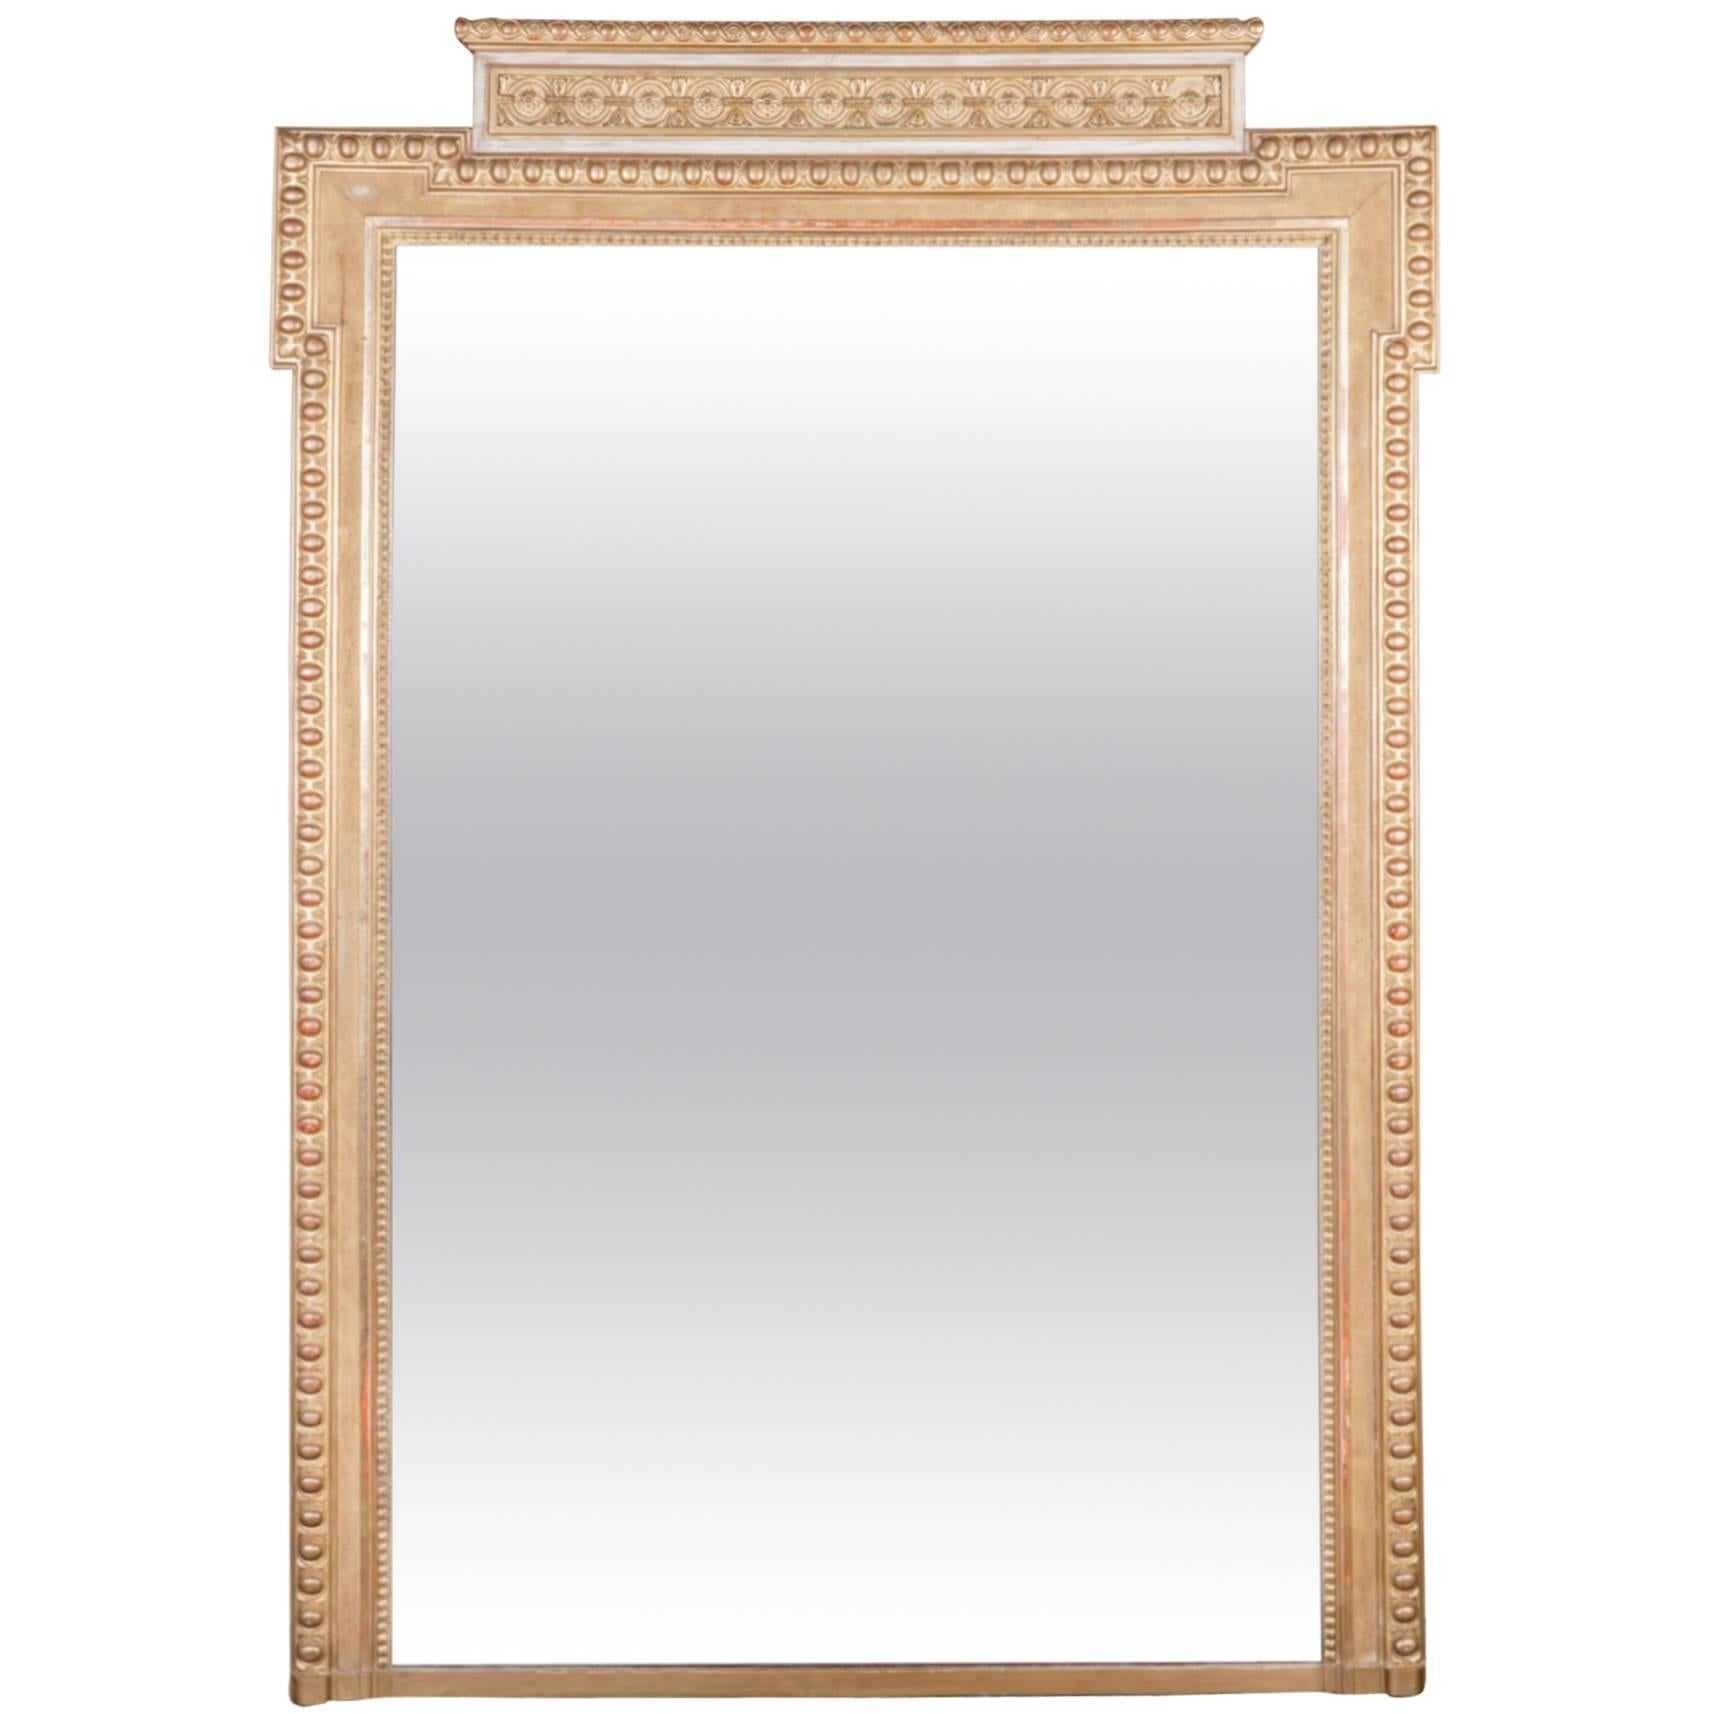 French Louis XVI Period Giltwood Mirror